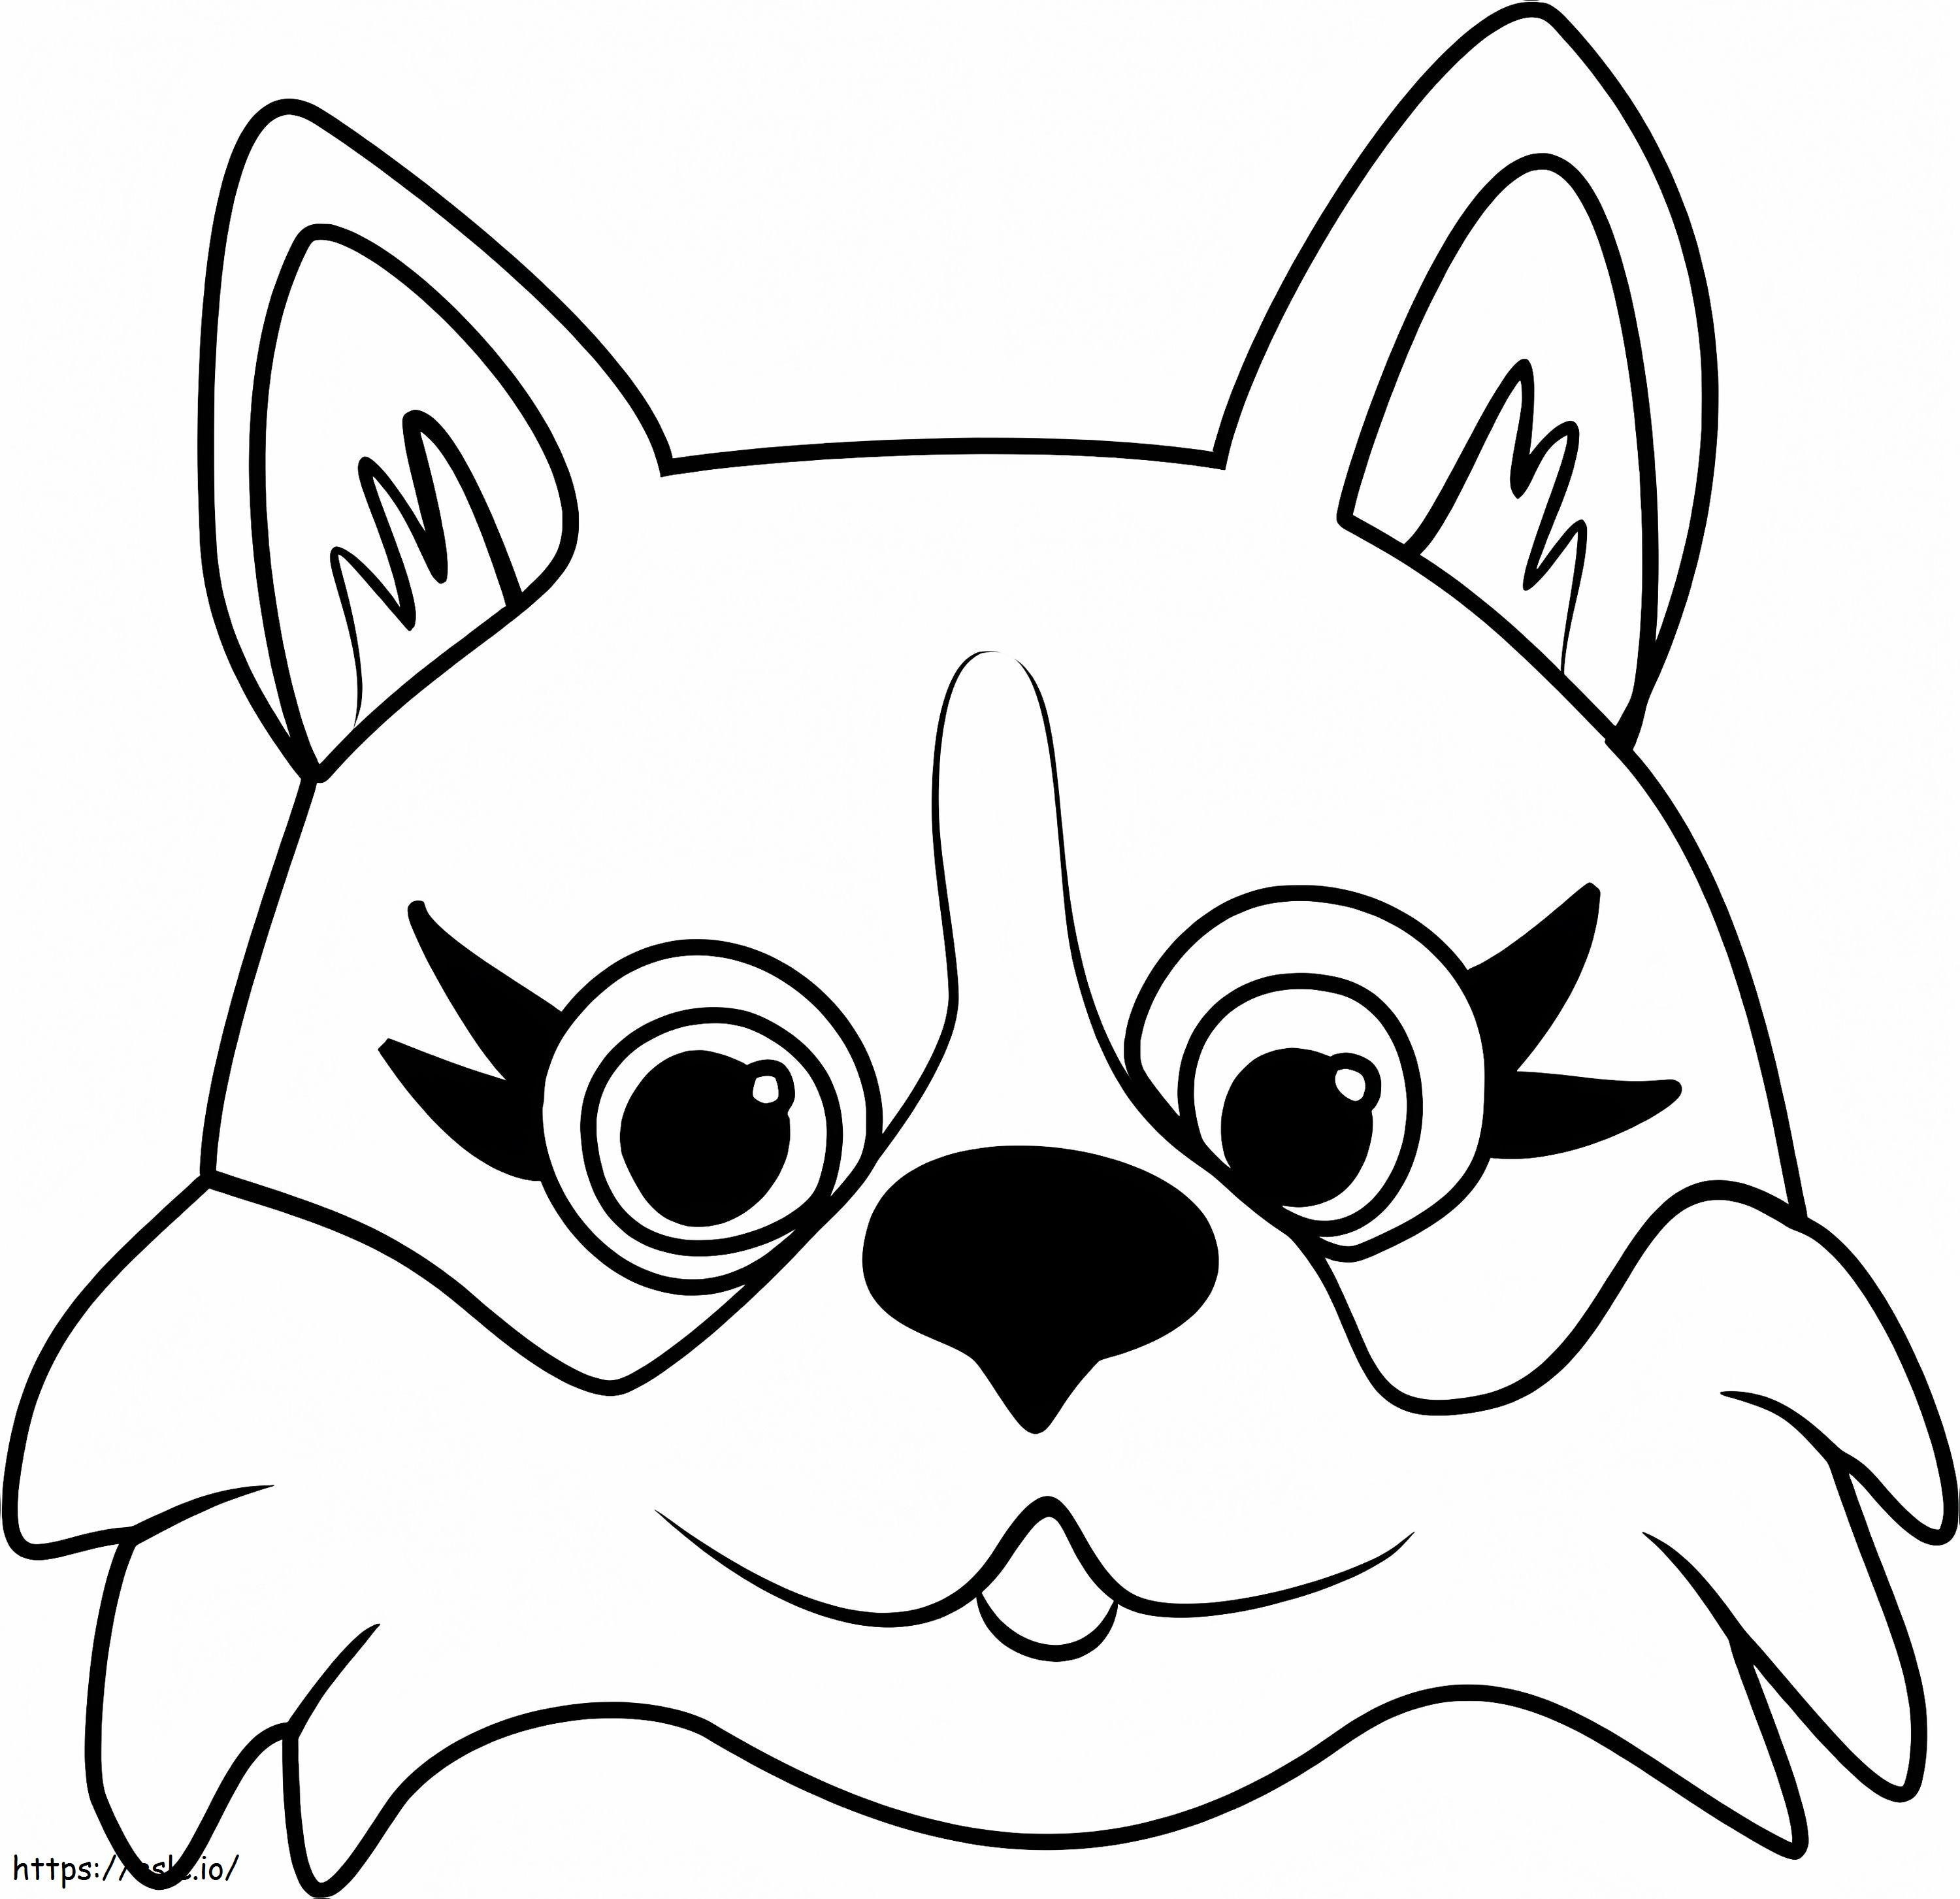 Coloriage Visage de chien Corgi à imprimer dessin